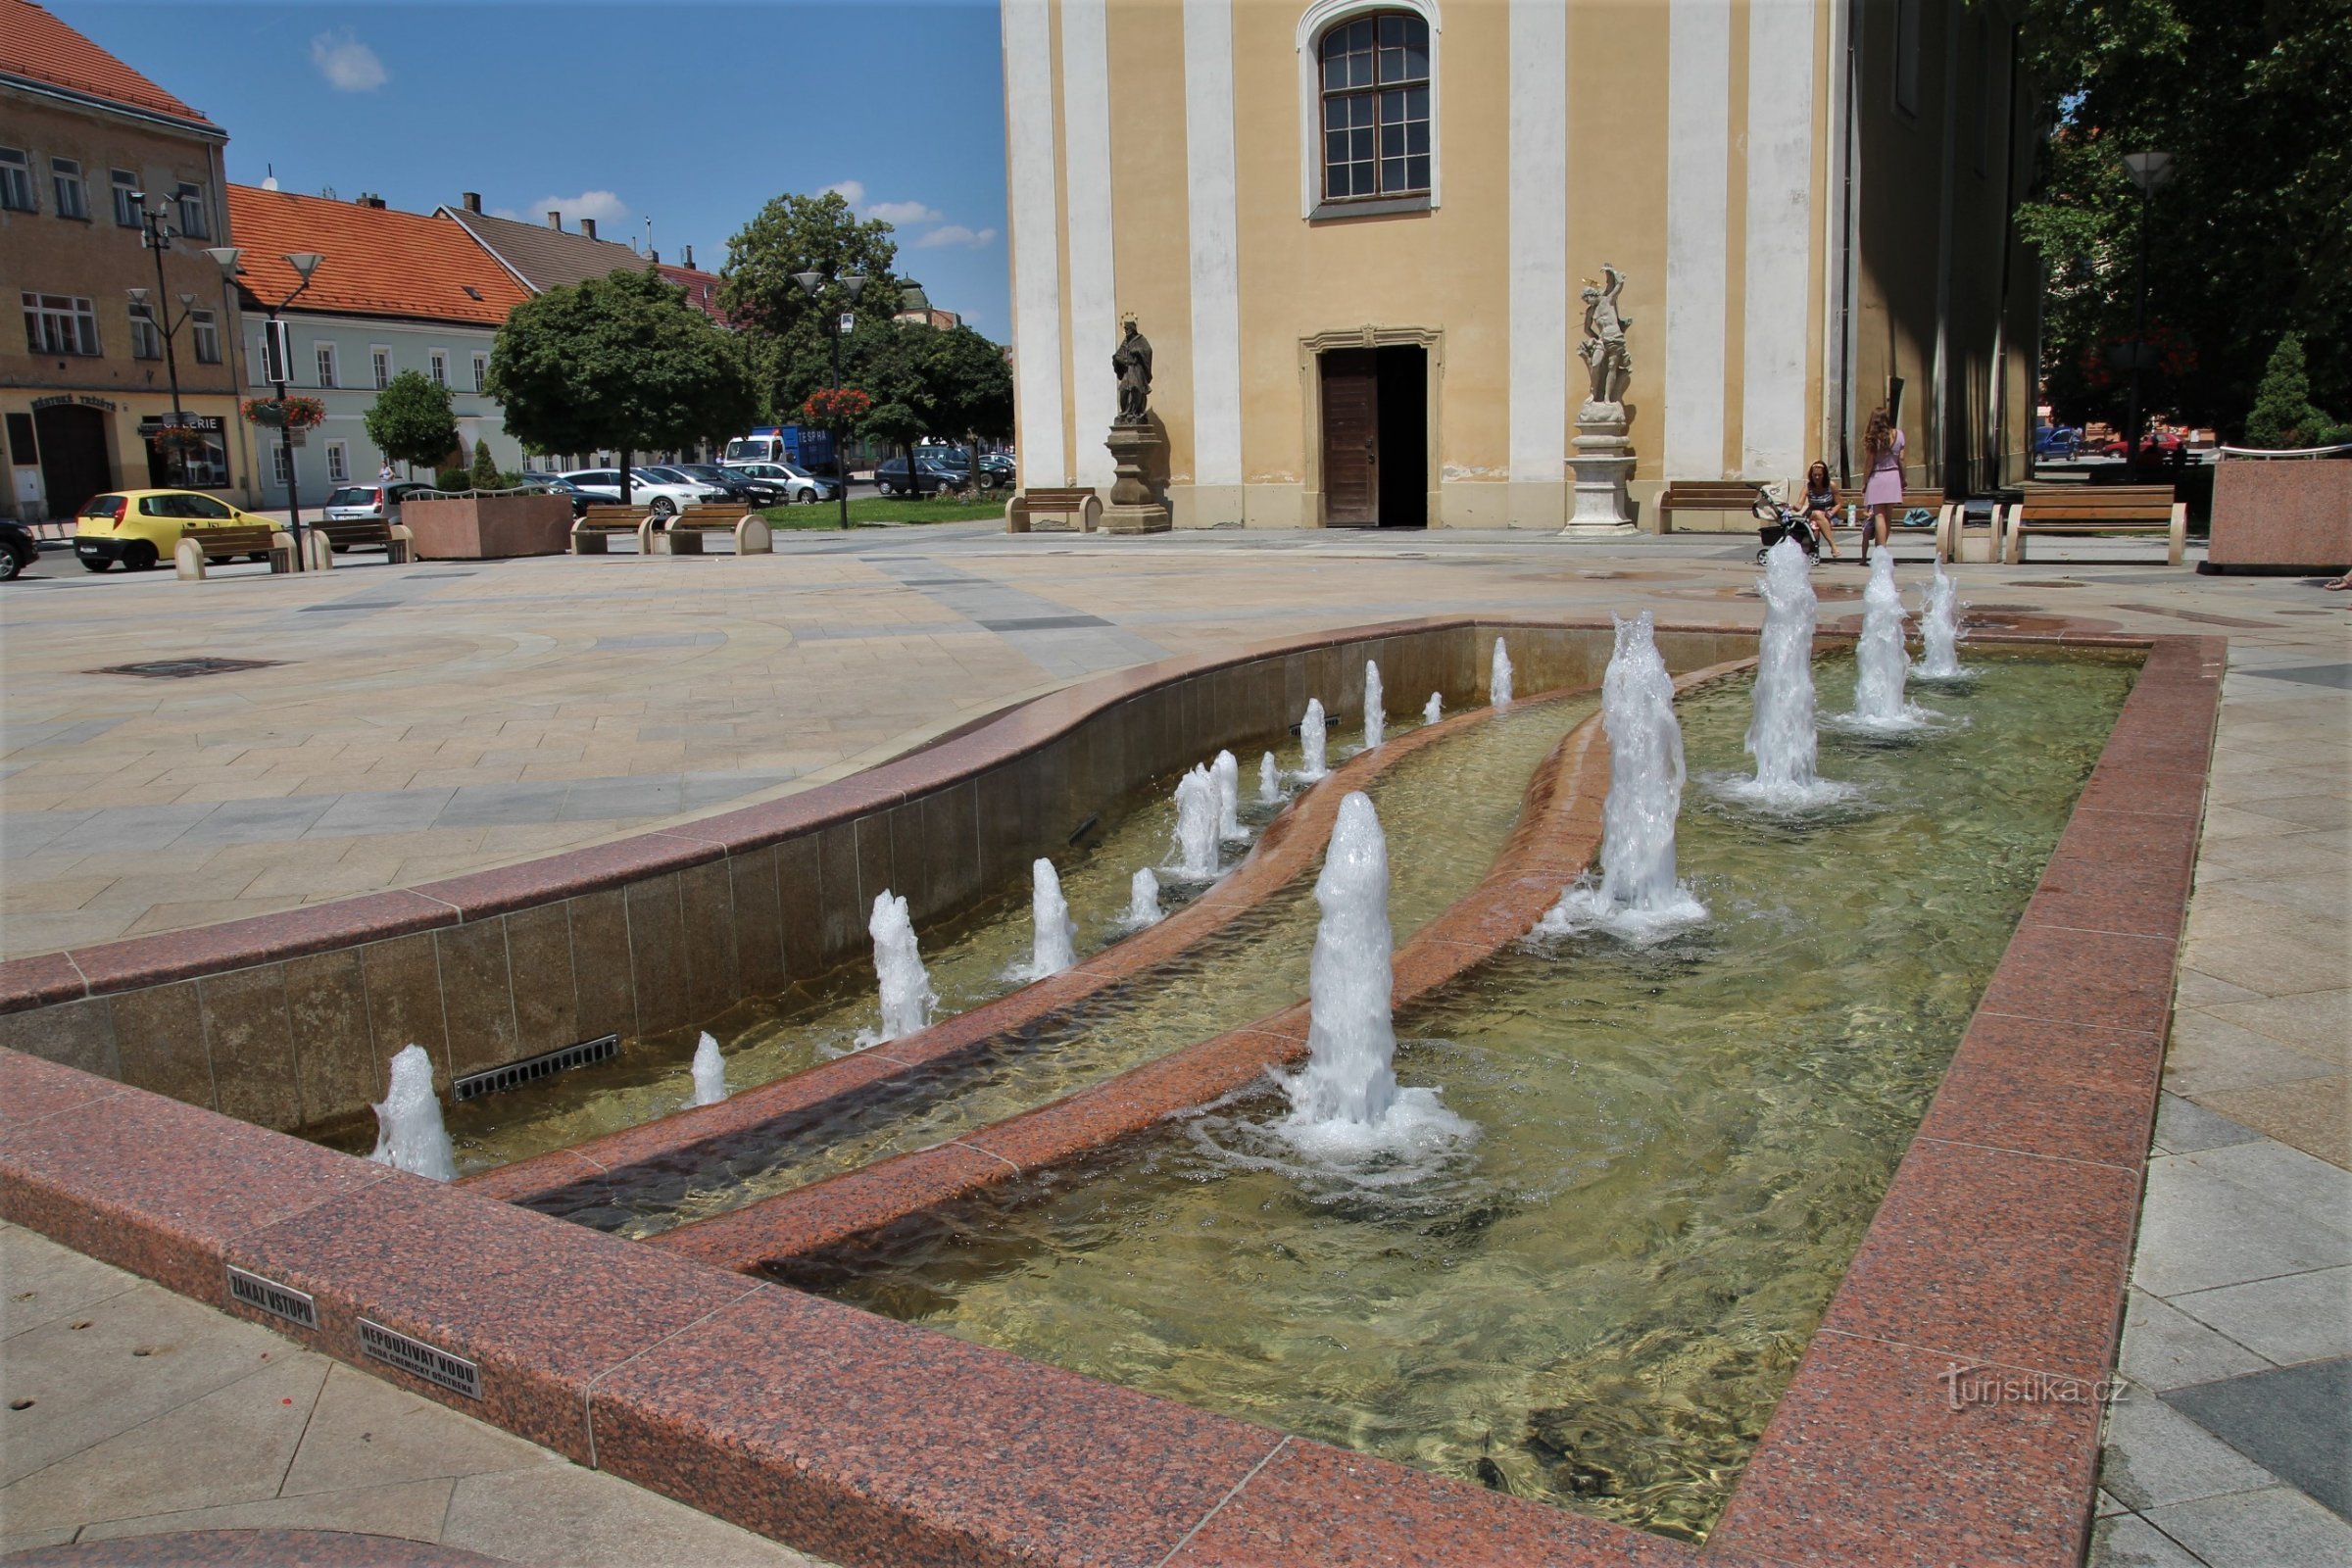 歌唱喷泉在圣约翰教堂附近。 劳伦斯